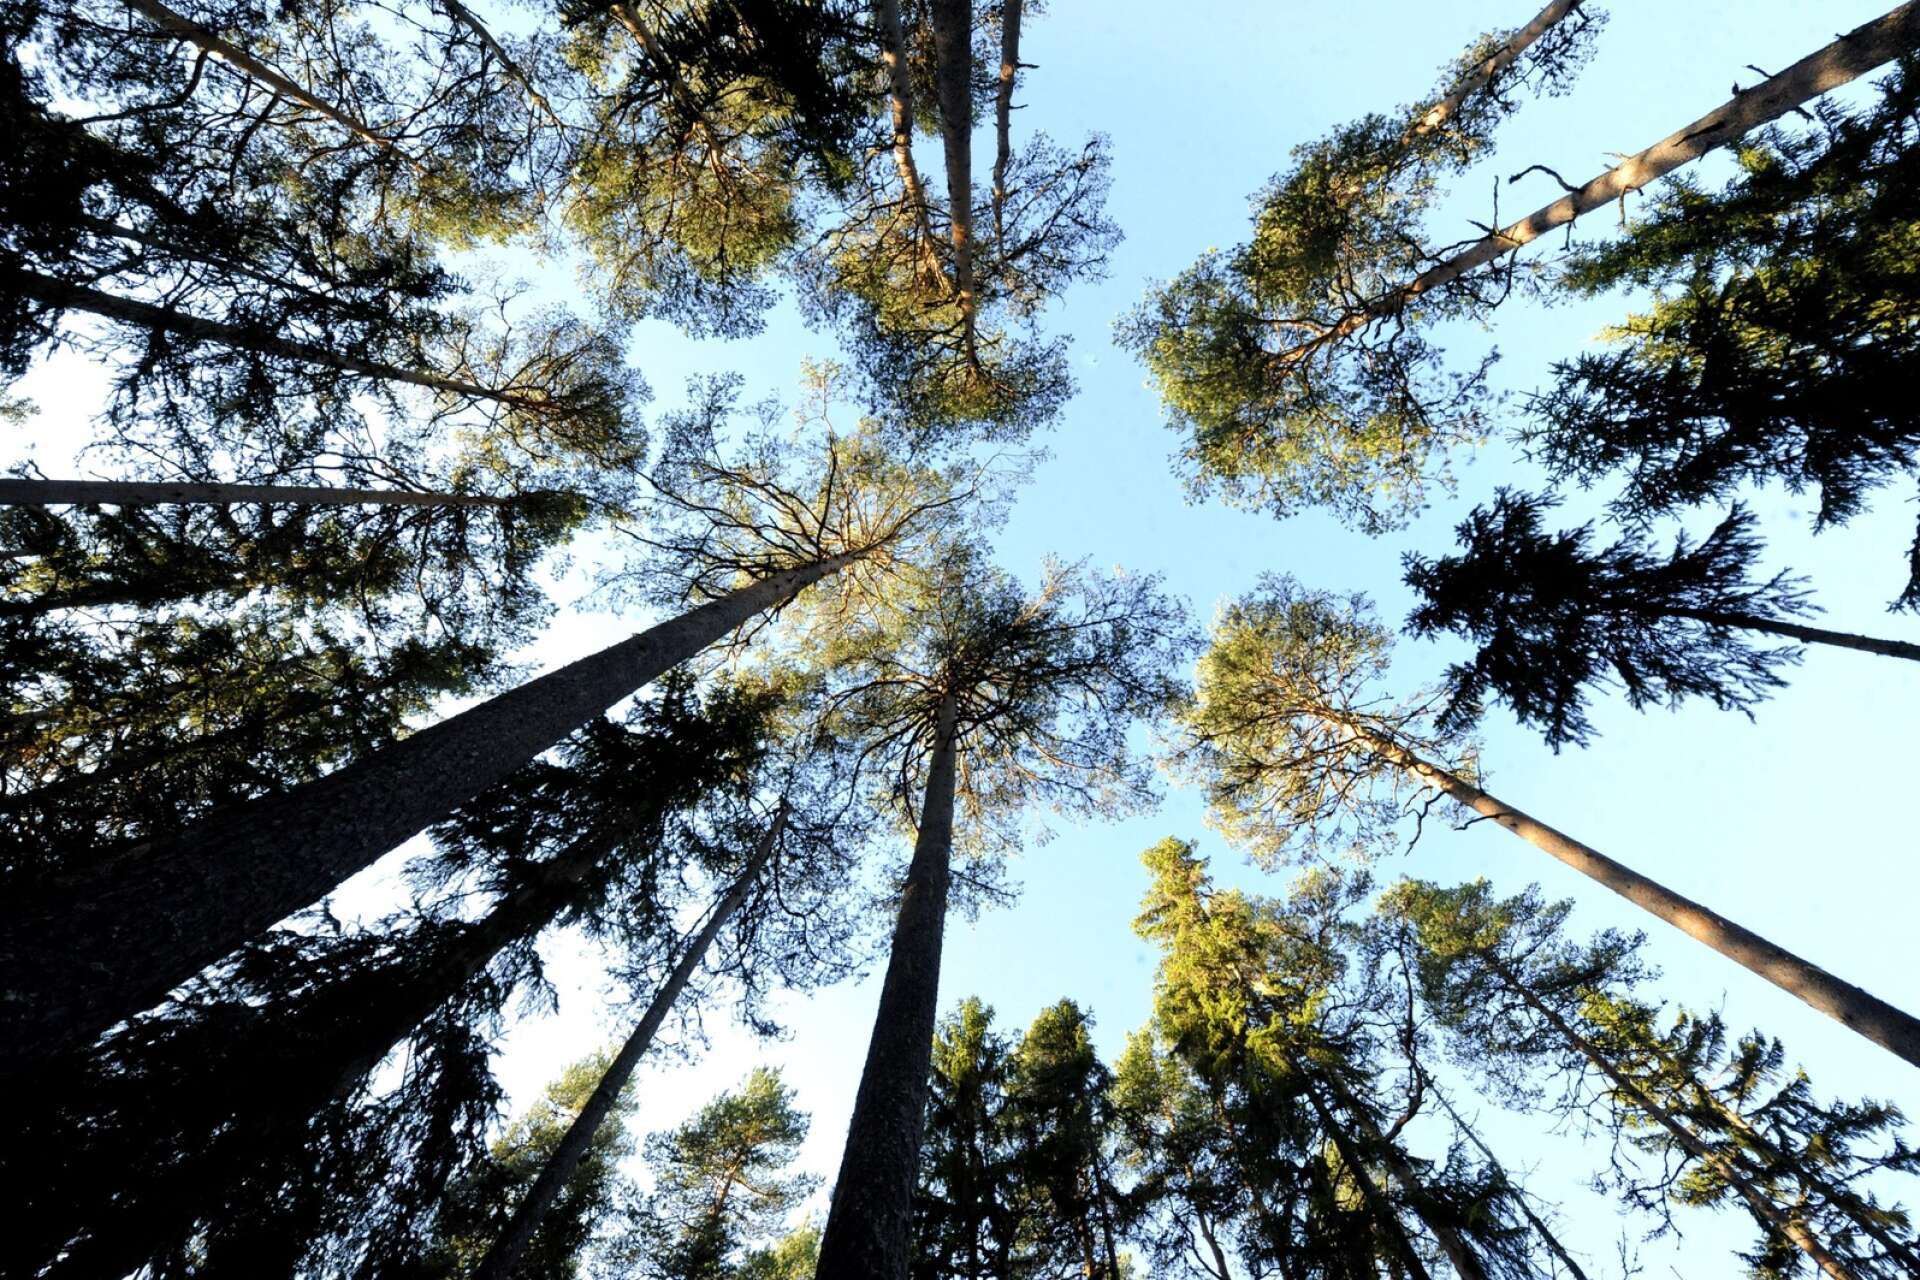 ”Att hugga skog med höga naturvärden och ersätta det med virkesåkrar av gran eller tall är ett dåligt grundat beslut”, skriver insändarskribenten.